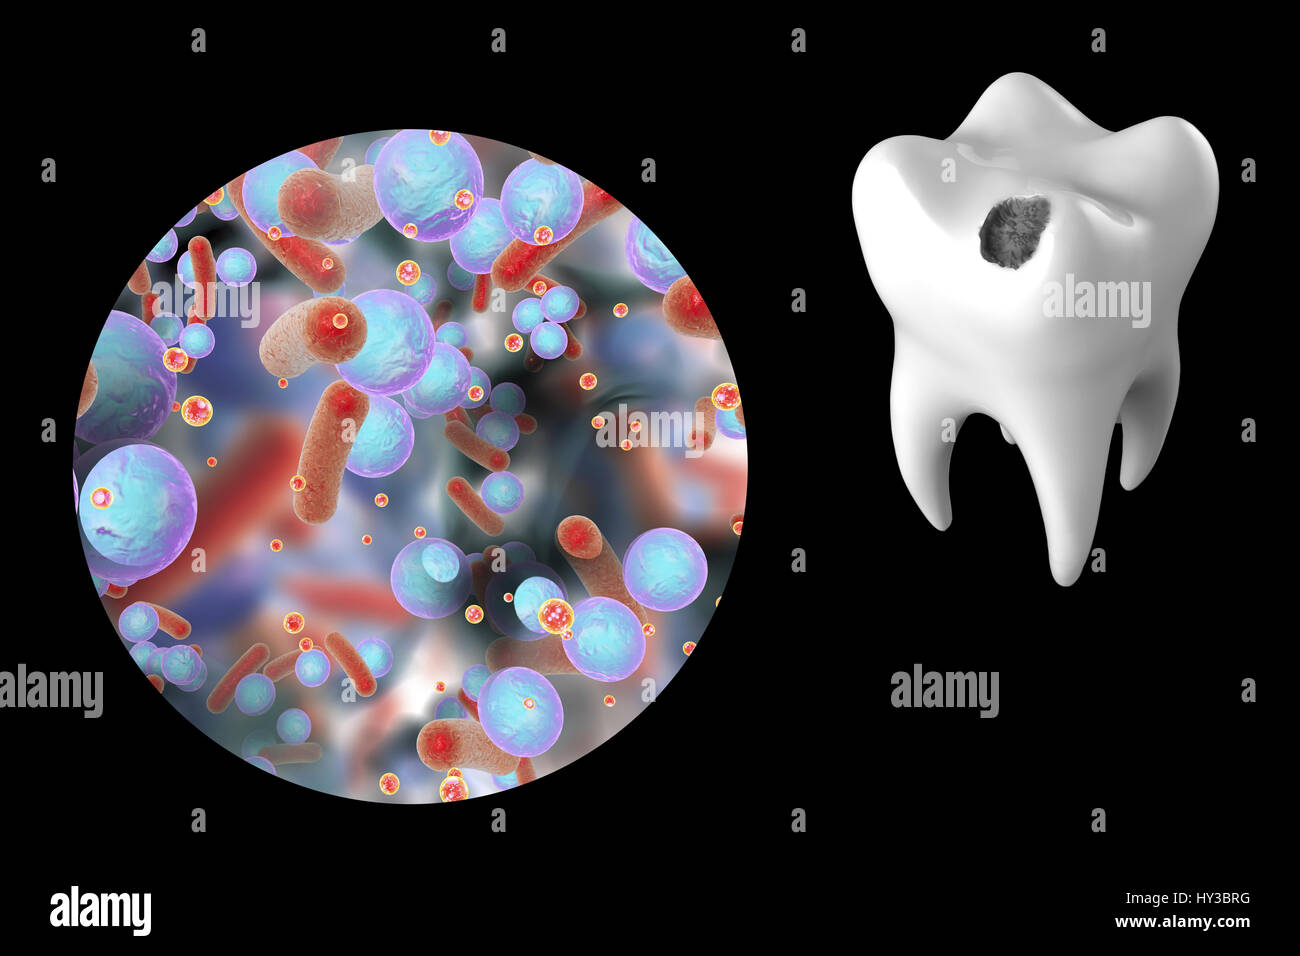 La caries dental. Equipo ilustración de un diente con una cavidad y una vista cercana de la bacteria que causa la formación de caries. Foto de stock